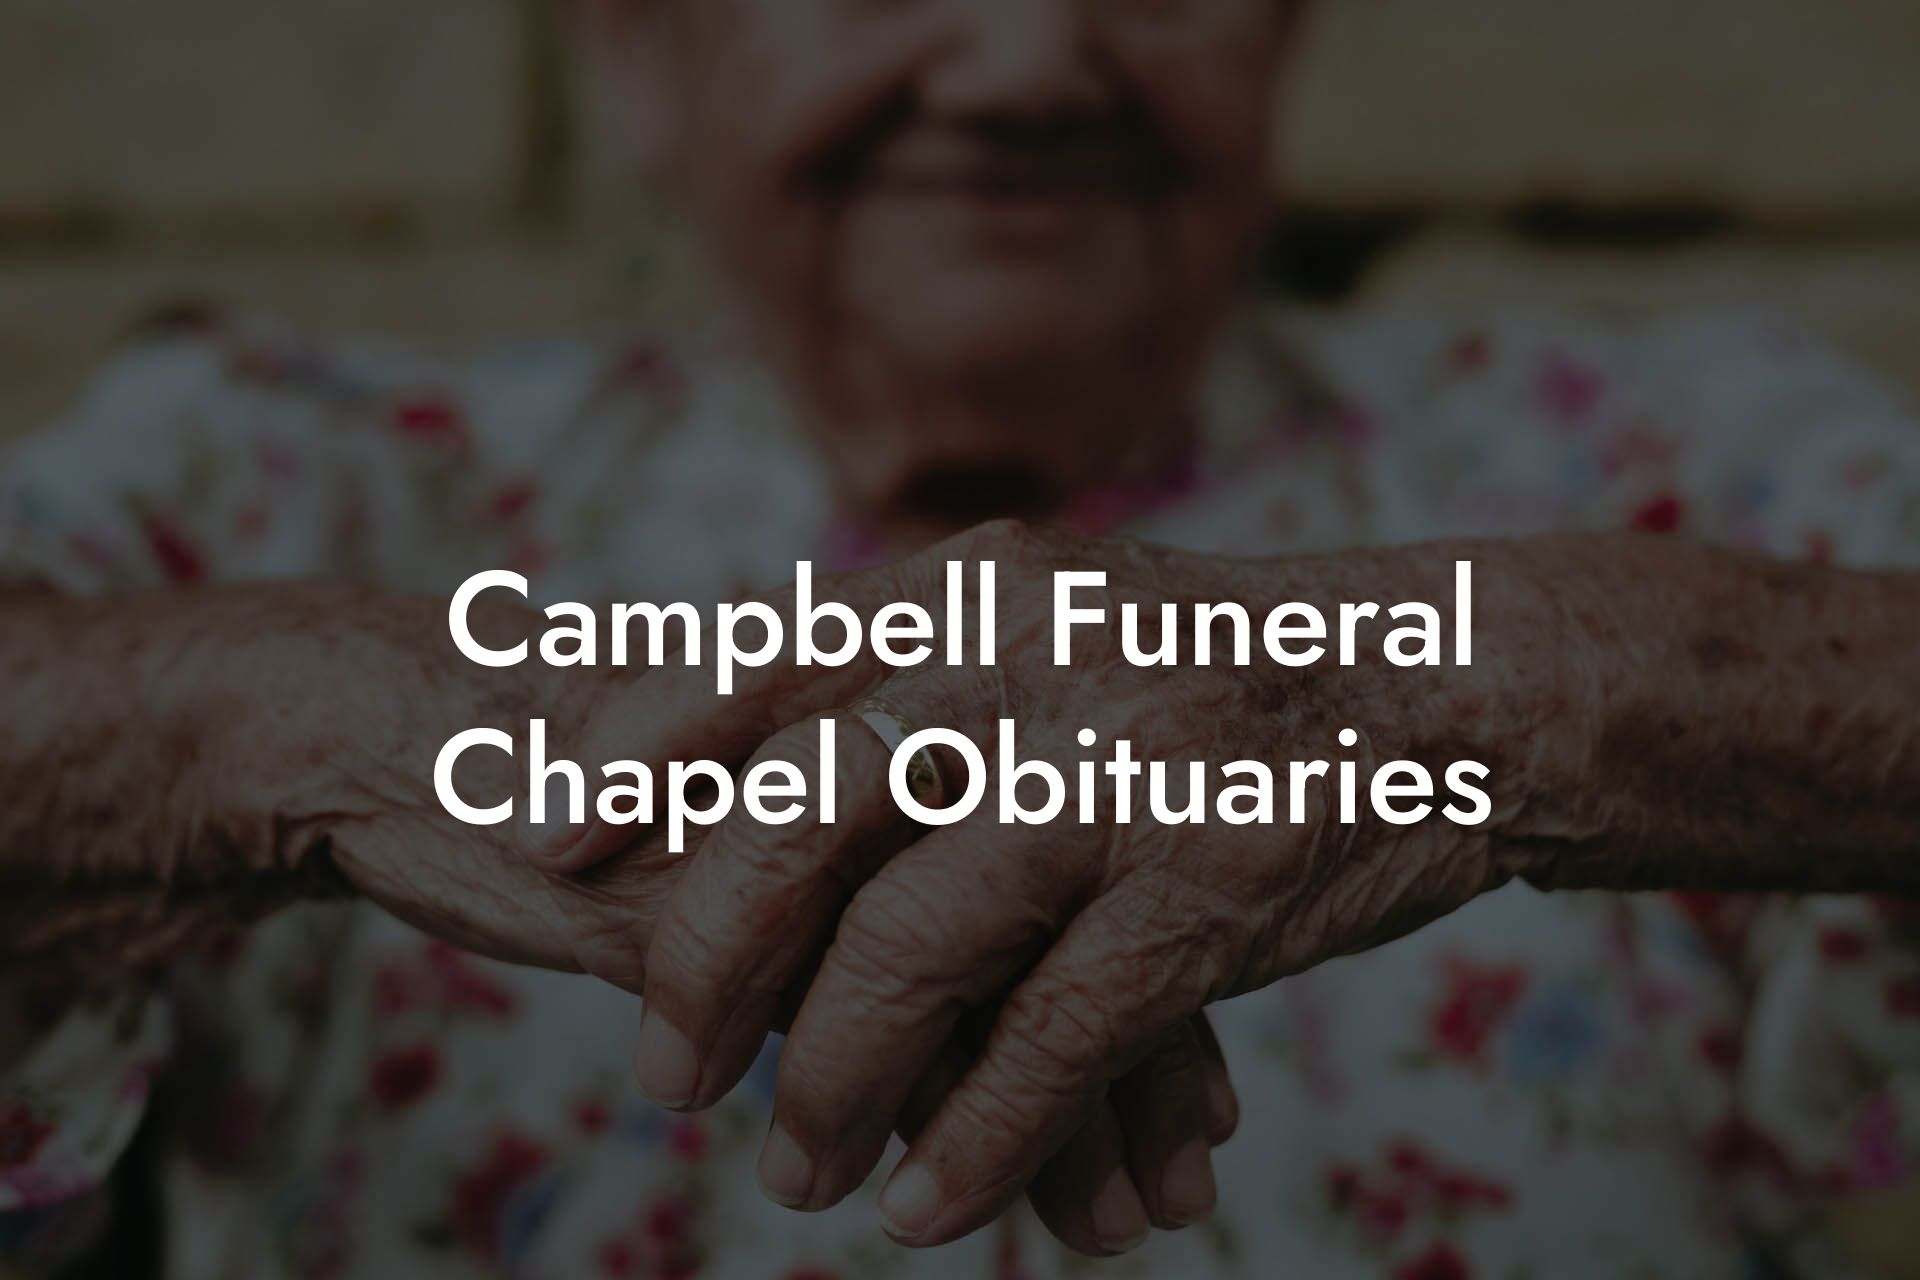 Campbell Funeral Chapel Obituaries